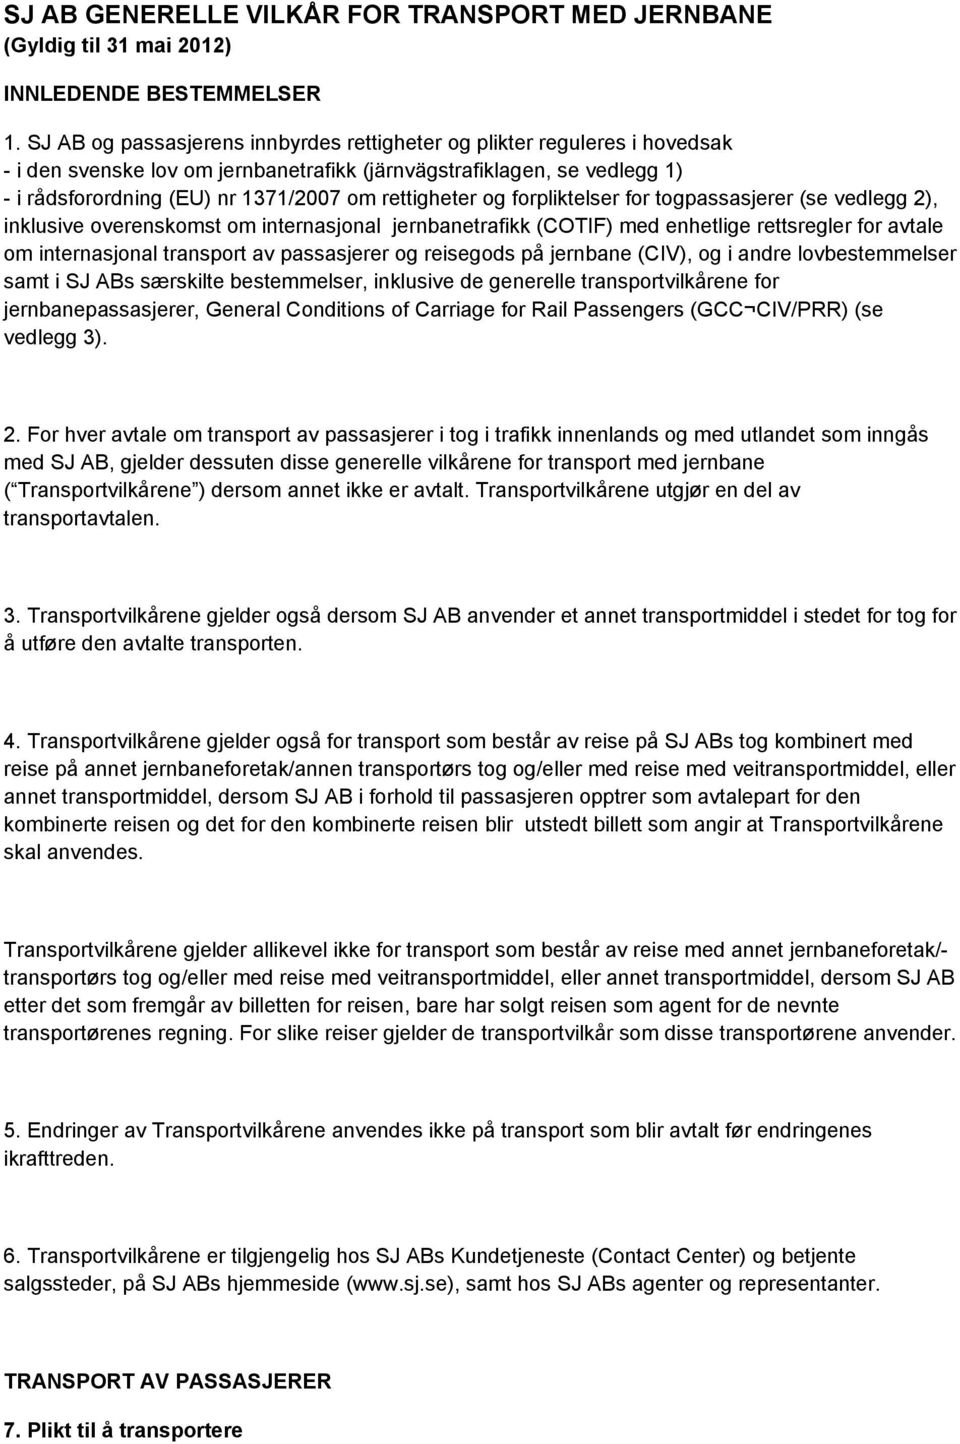 rettigheter og forpliktelser for togpassasjerer (se vedlegg 2), inklusive overenskomst om internasjonal jernbanetrafikk (COTIF) med enhetlige rettsregler for avtale om internasjonal transport av